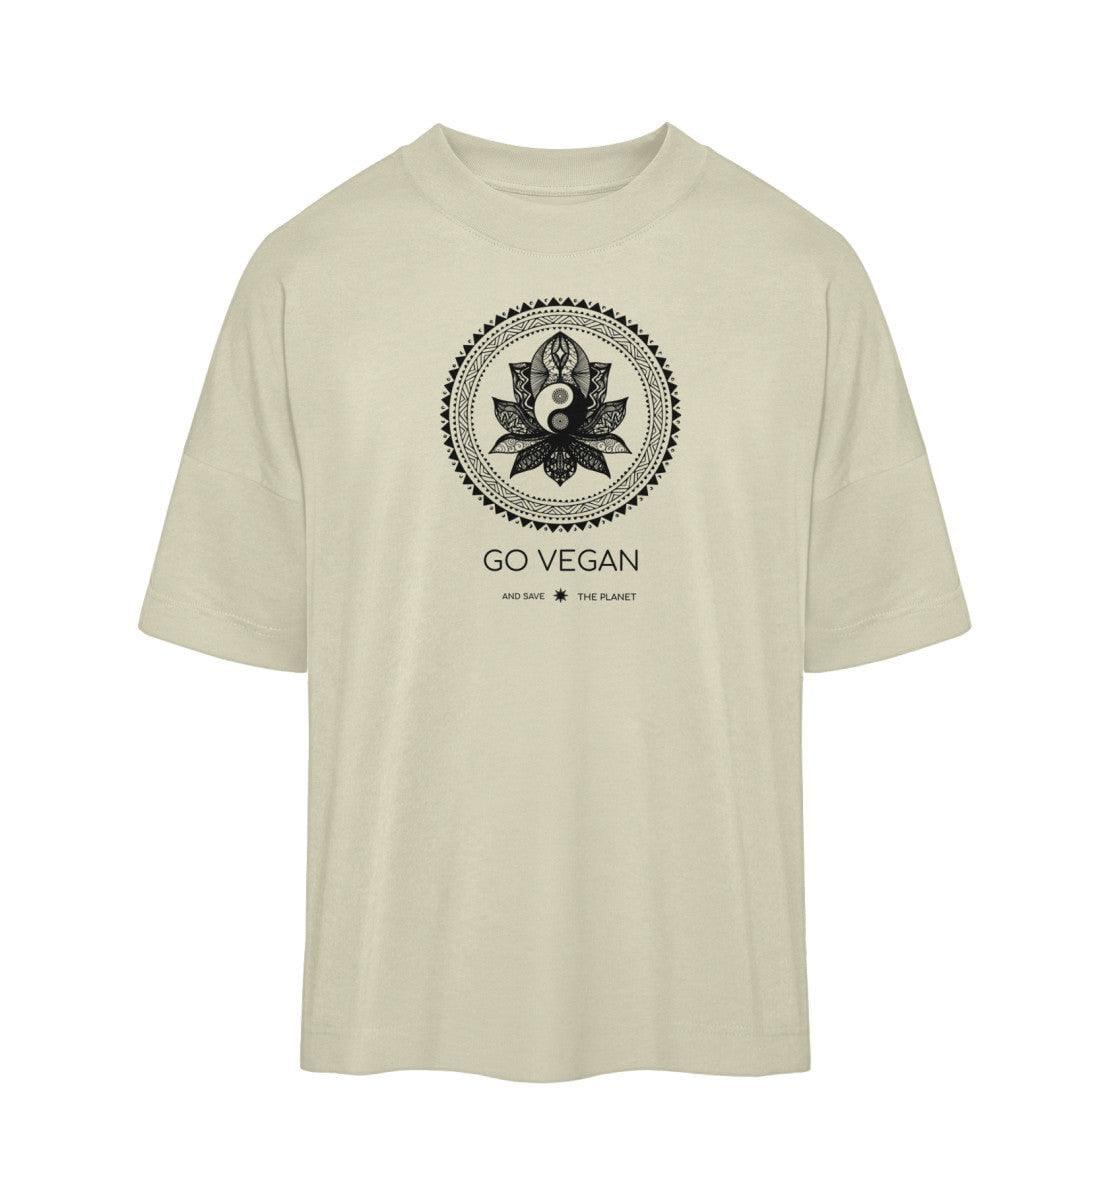 Go vegan - Organic Oversized Shirt - Team Vegan © vegan t shirt